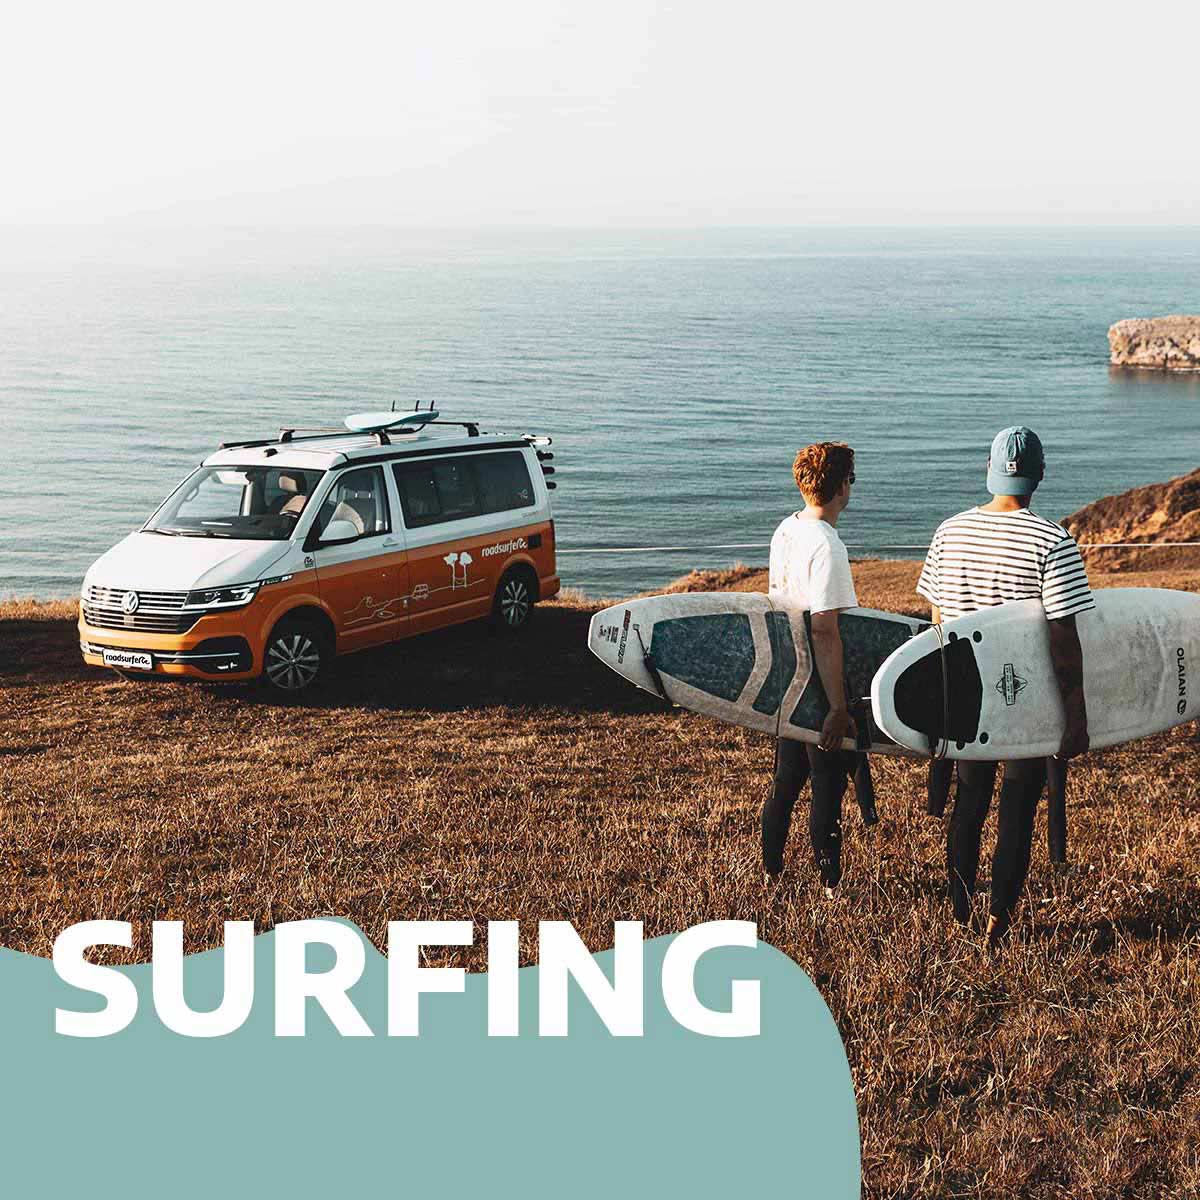 Surfing: Campervan am Meer mit zwei Personen mit Surfbrett im Vordergrund